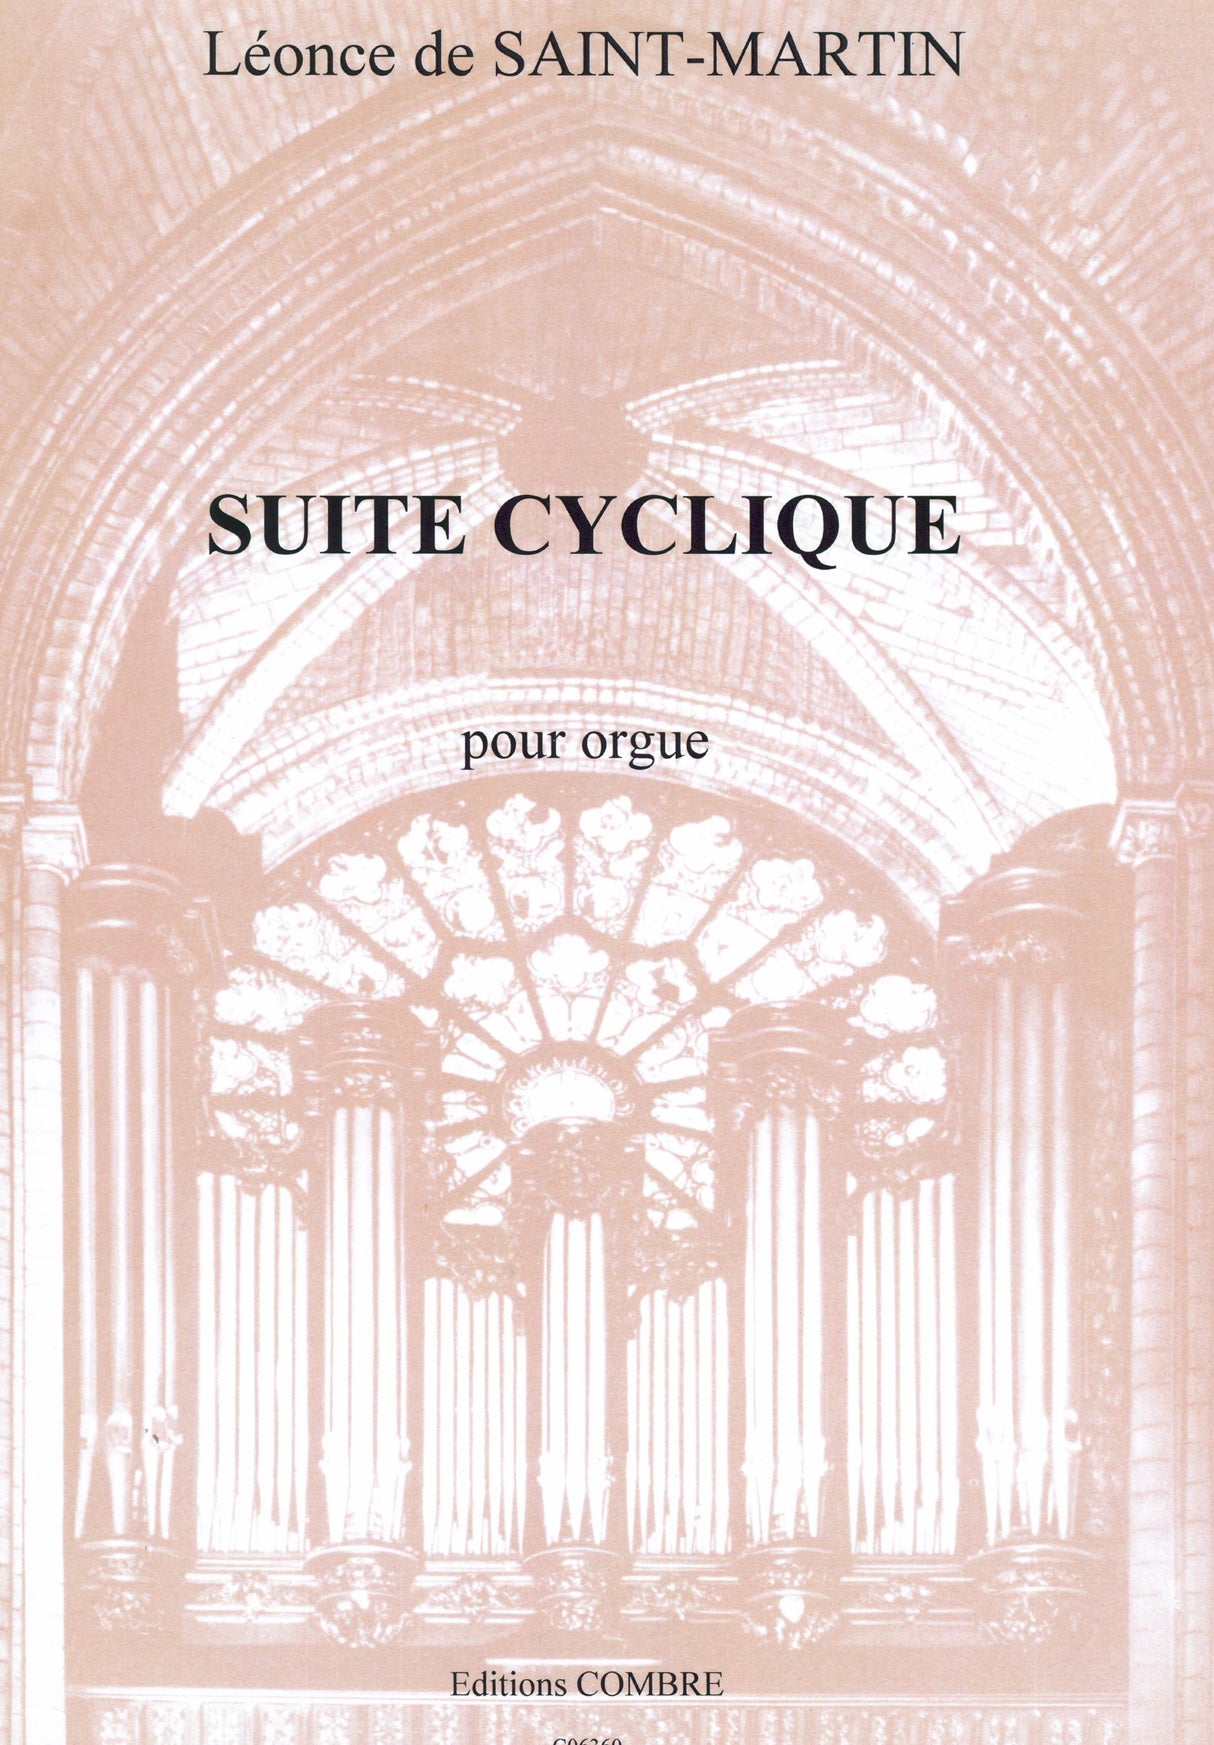 Saint-Martin: Suite cyclique, Op. 11